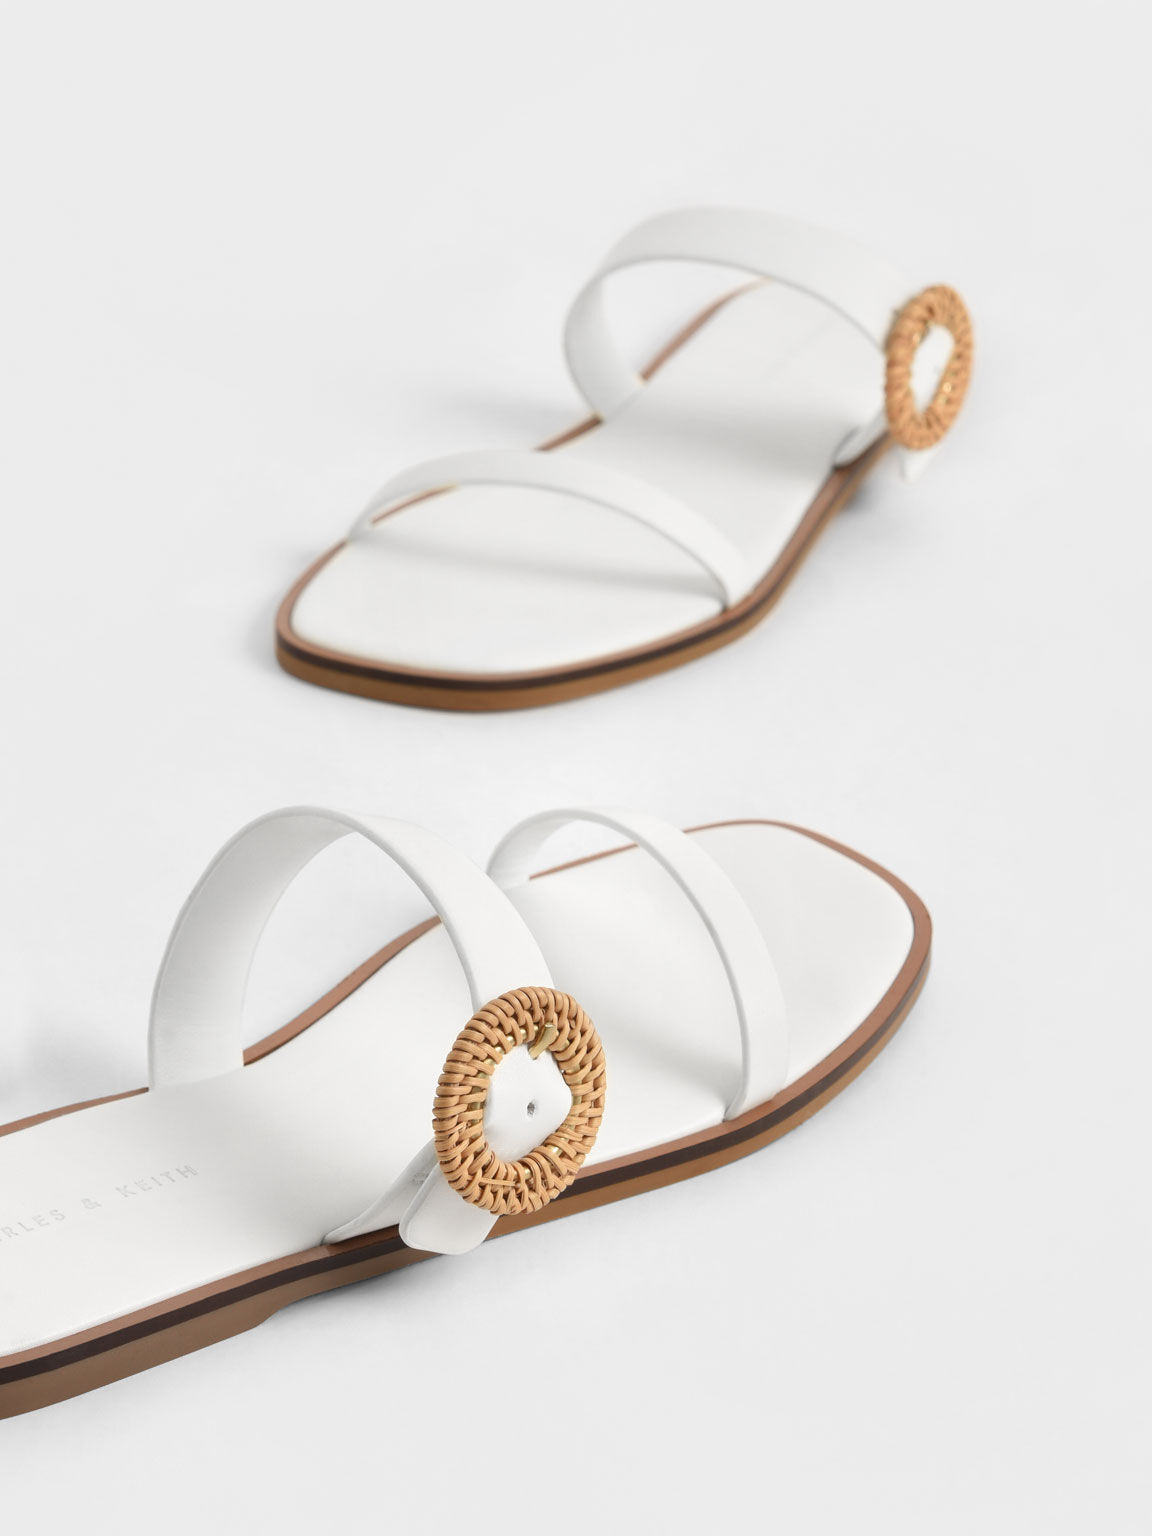 編織圓釦雙帶拖鞋, 白色, hi-res